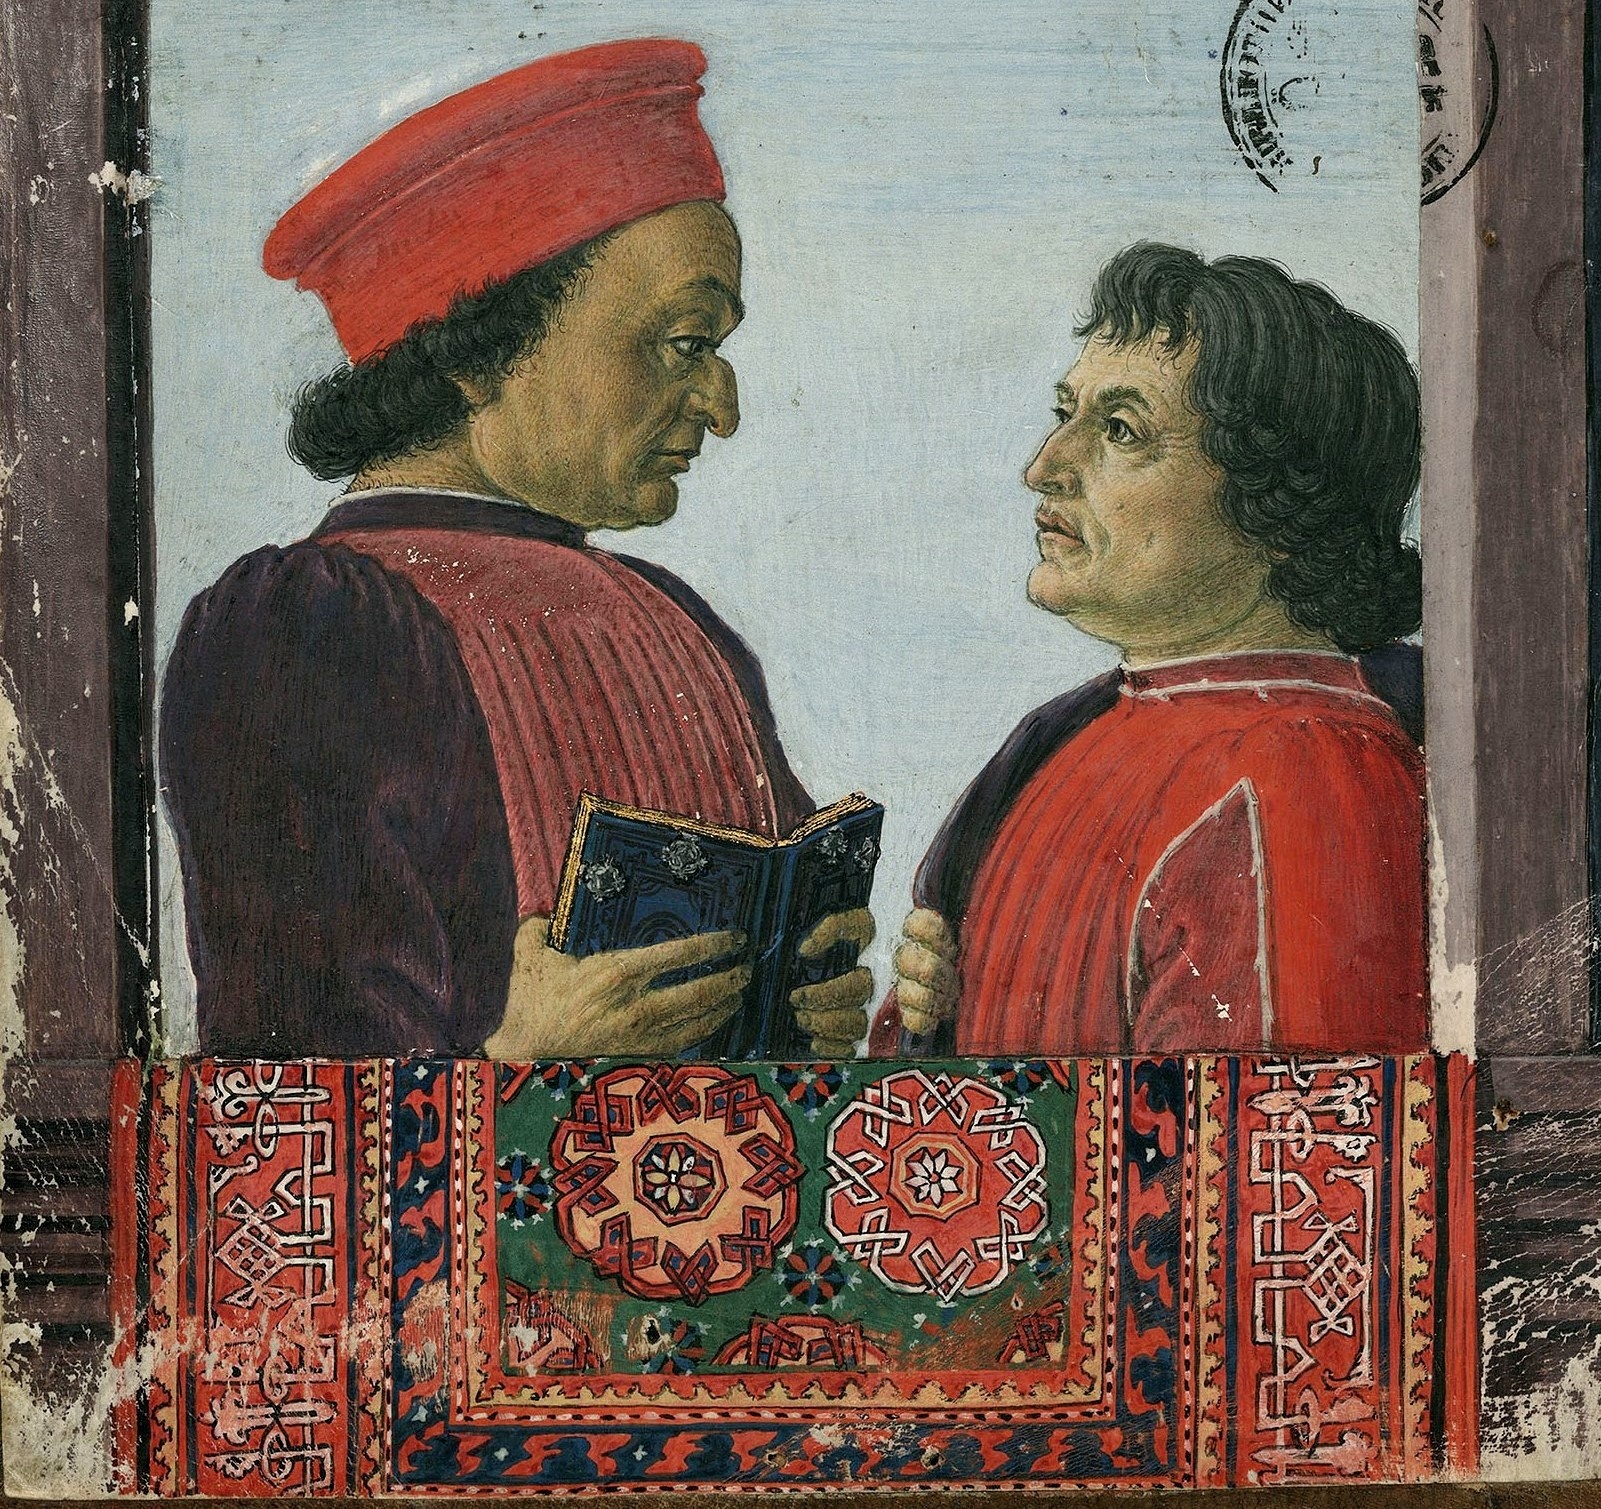 1475 Federico Montefeltro and Cristofo Landino